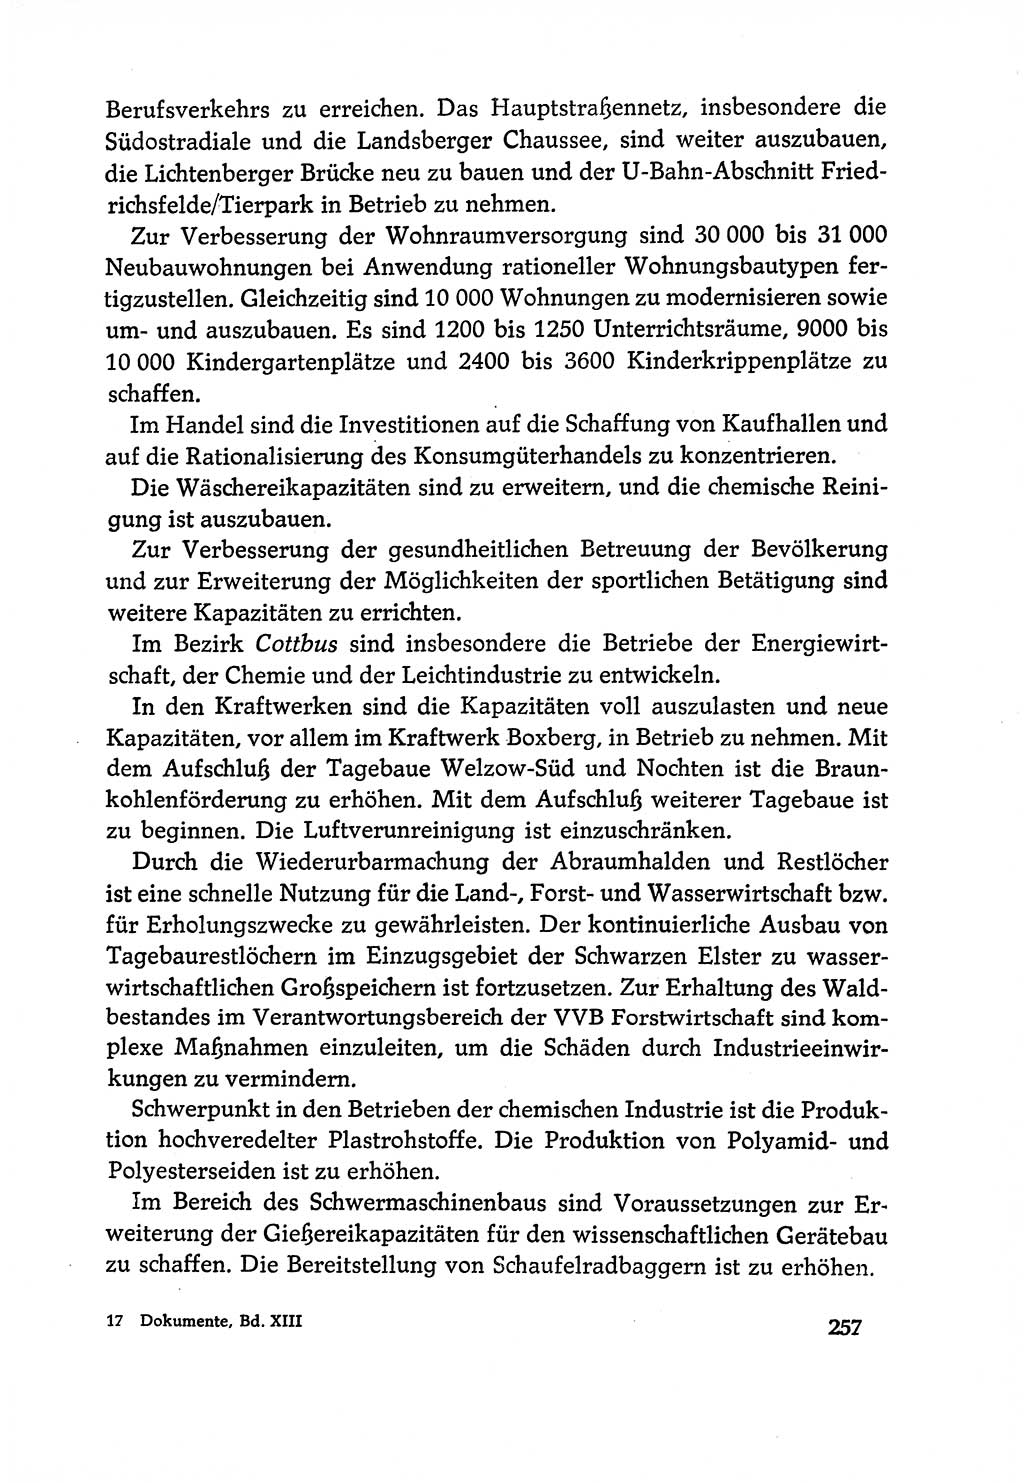 Dokumente der Sozialistischen Einheitspartei Deutschlands (SED) [Deutsche Demokratische Republik (DDR)] 1970-1971, Seite 257 (Dok. SED DDR 1970-1971, S. 257)